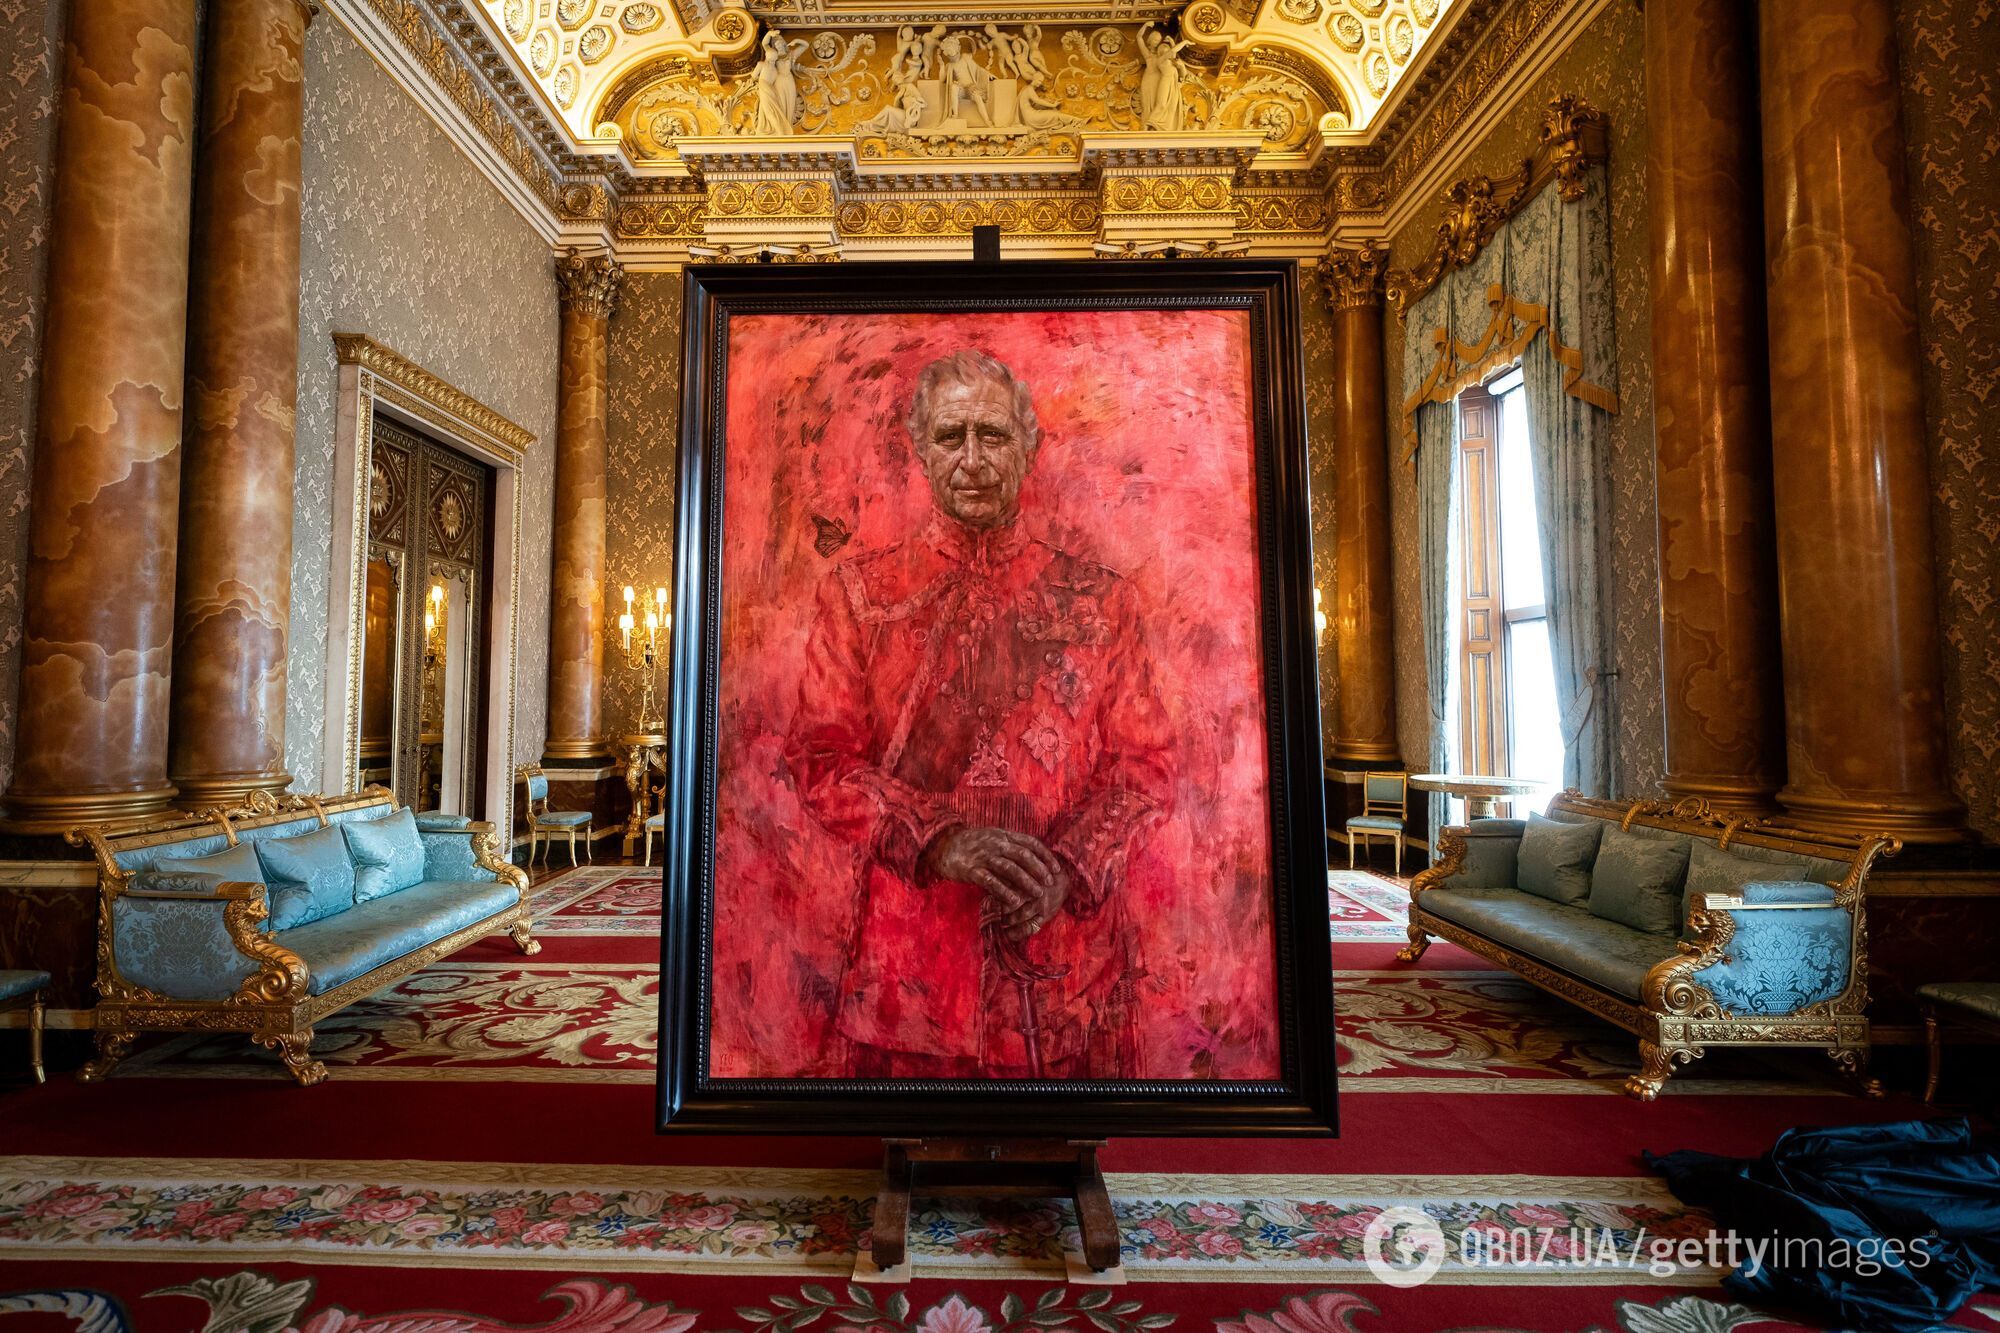 "Будто разлили варенье": официальный портрет короля Чарльза вызвал дискуссию в сети. Фото